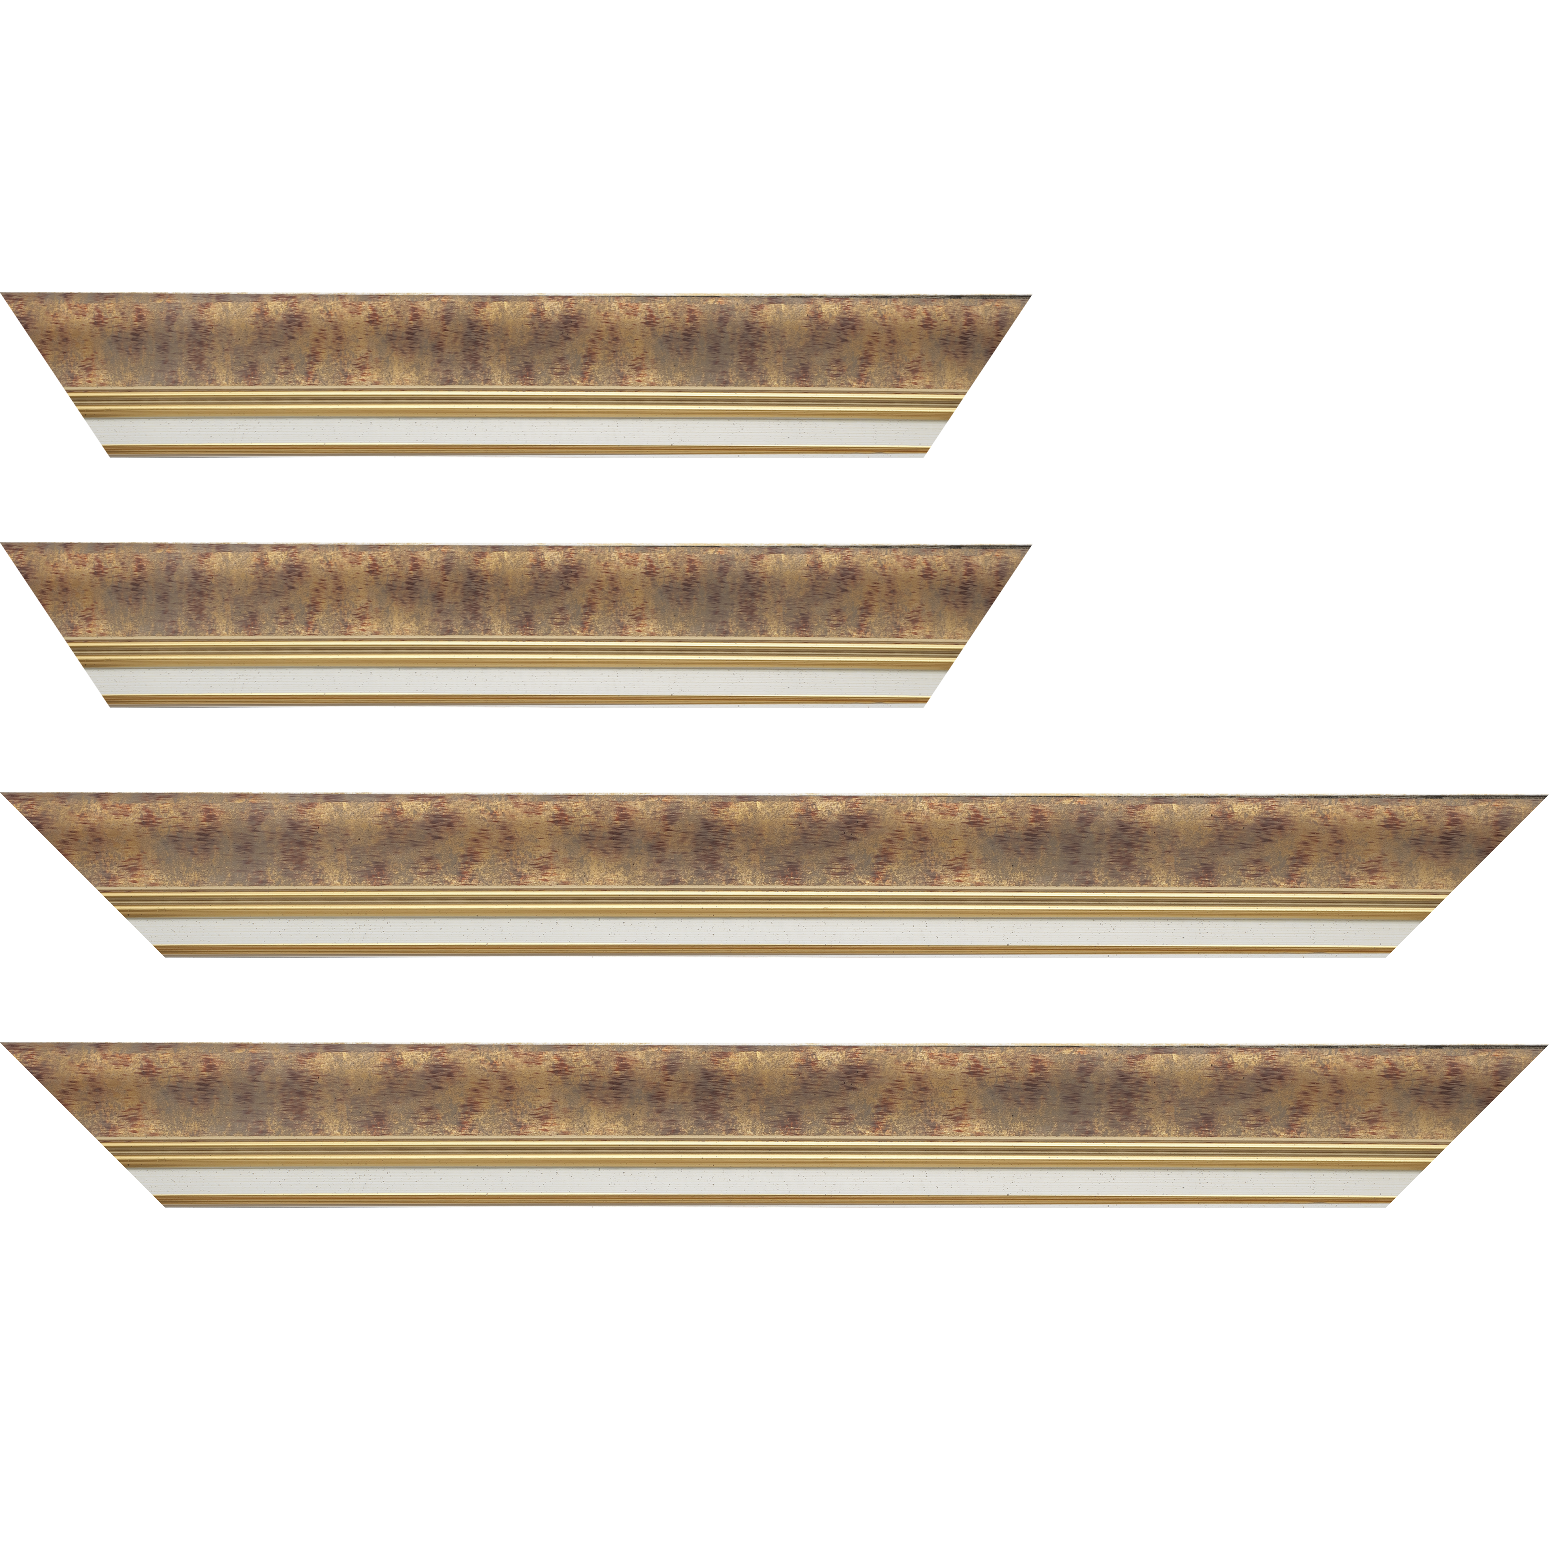 Baguette bois profil incurvé largeur 5.7cm de couleur bordeaux patiné fond or marie louise blanche mouchetée filet or intégré - 50x60